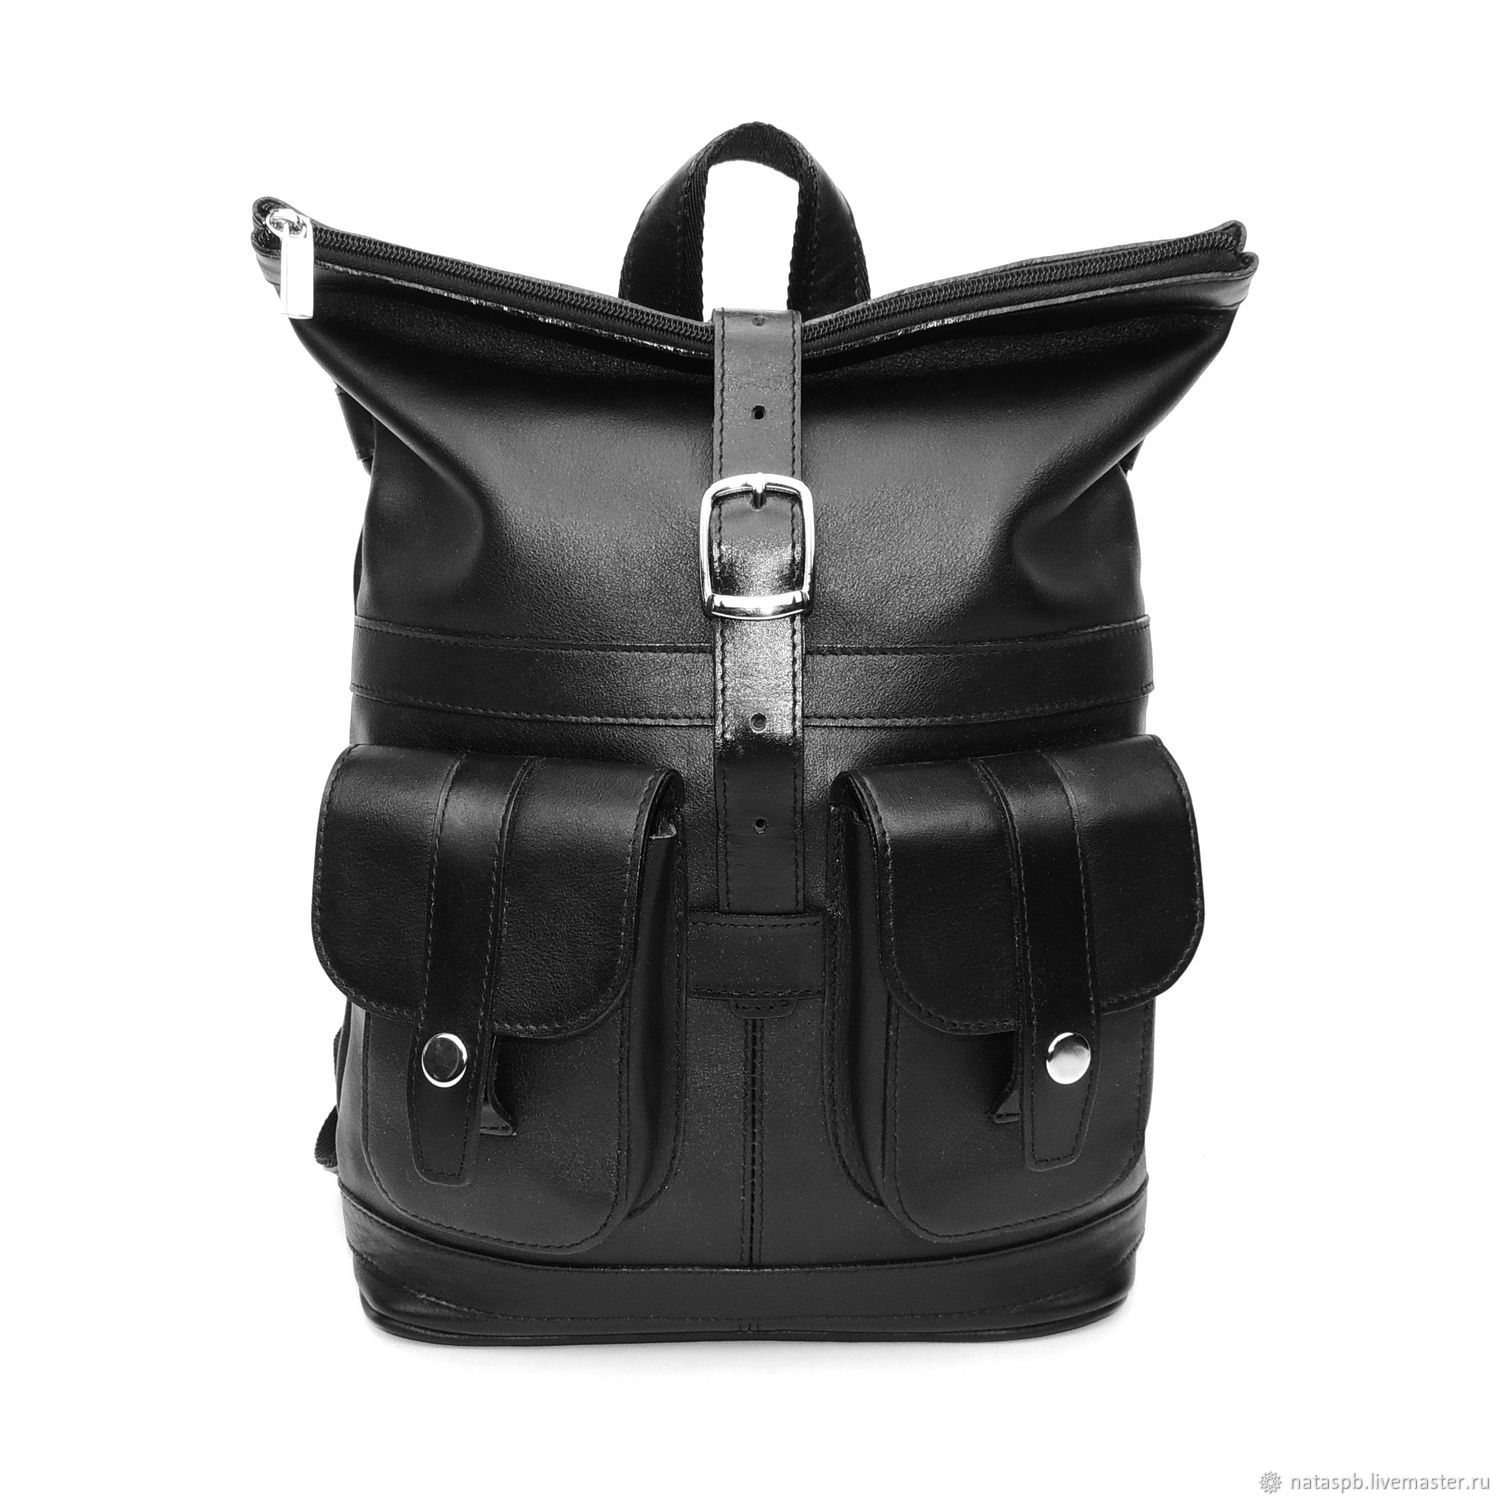 buy backpack women's backpack, buy backpack shop backpack leather backpack leather backpack, buy leather backpack, buy leather backpack women's handbag backpack
